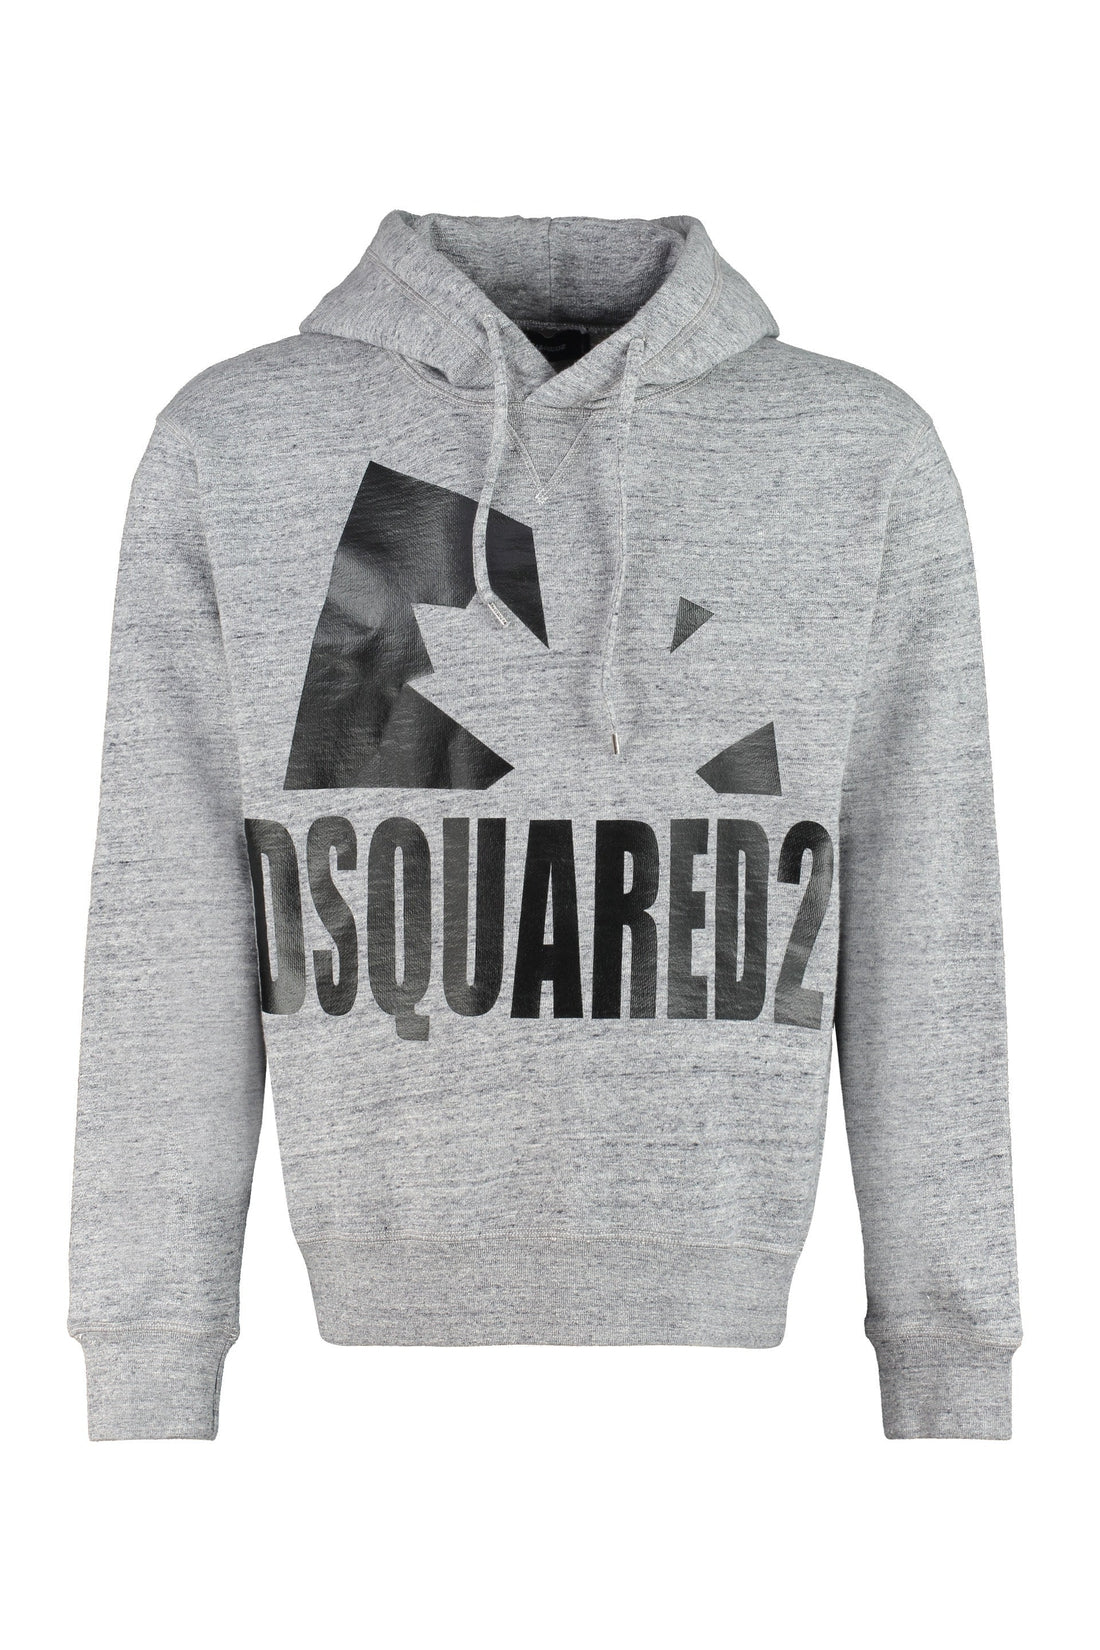 Dsquared2-OUTLET-SALE-Logo cotton hoodie-ARCHIVIST